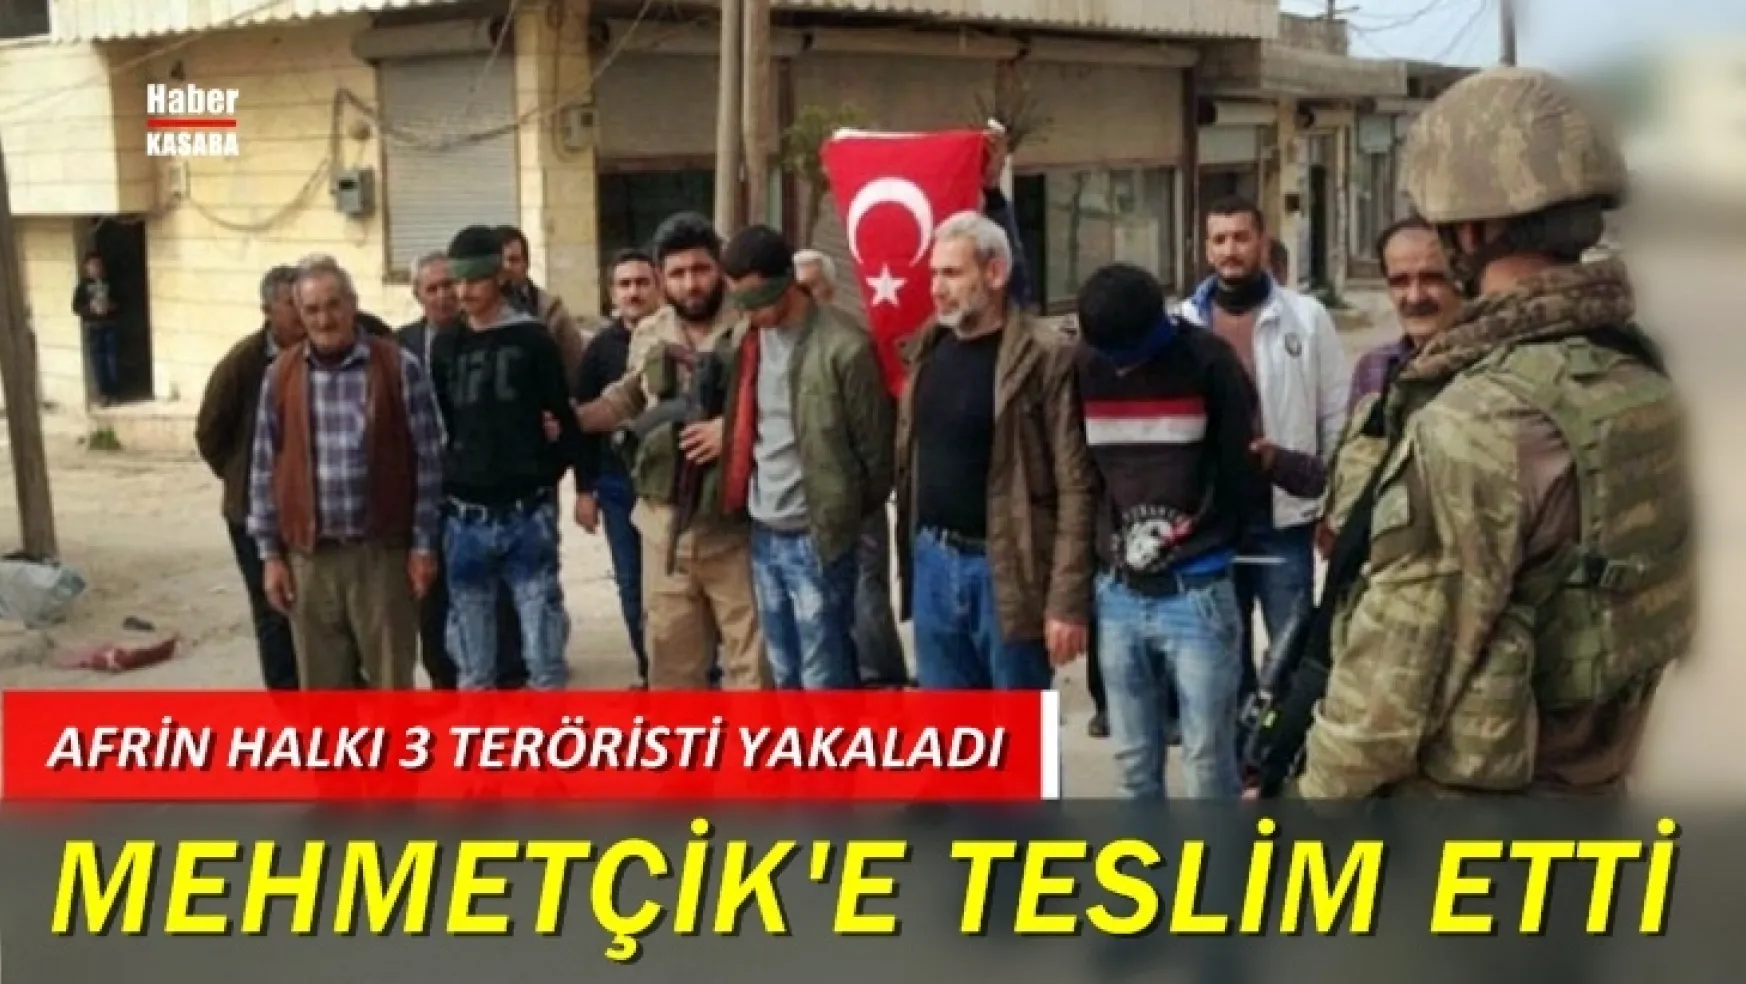 Afrin halkı teröristleri Mehmetçik'e böyle teslim etti